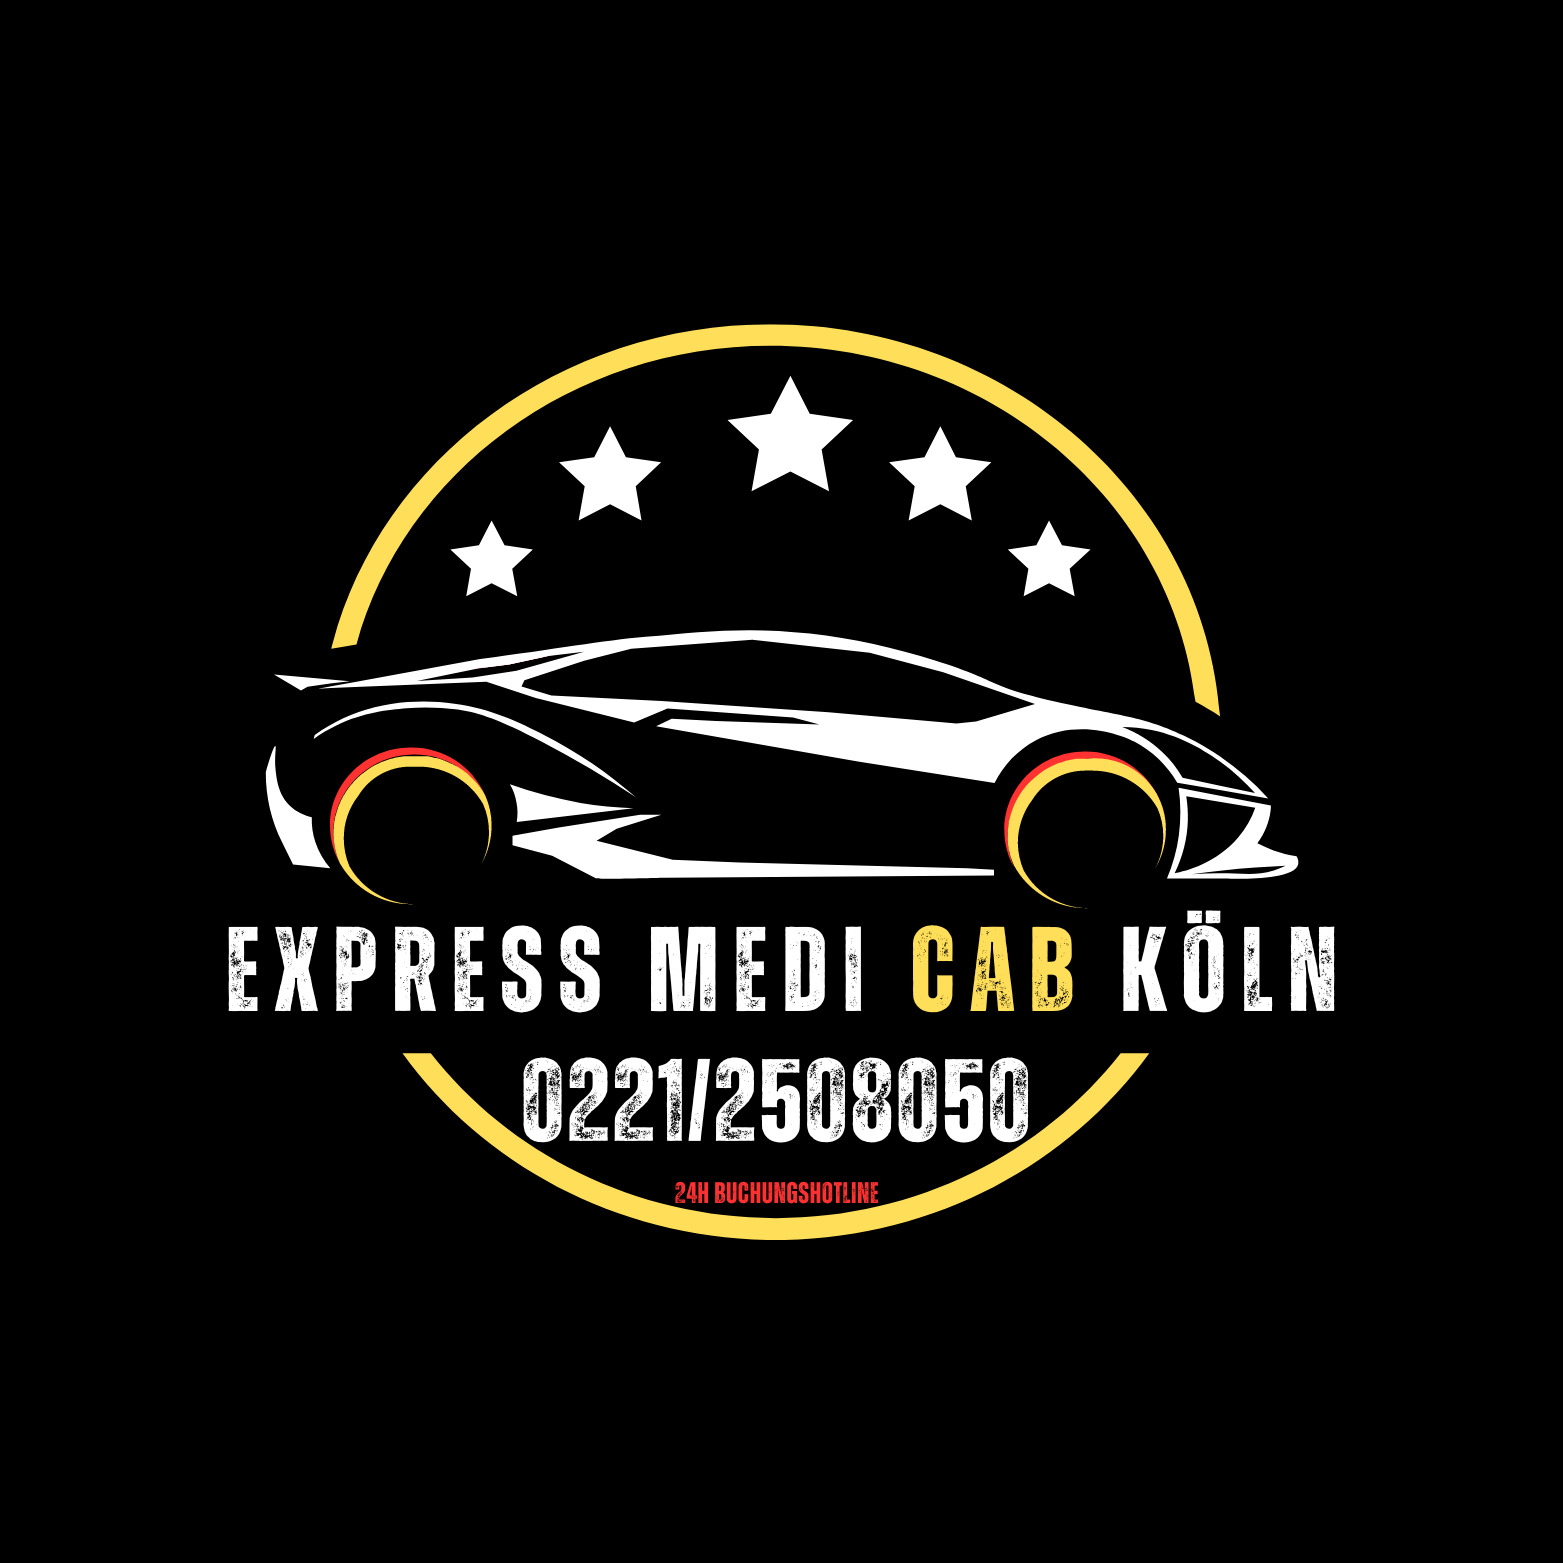 Express Medi Cab Inh. Anil Karakuz in Köln